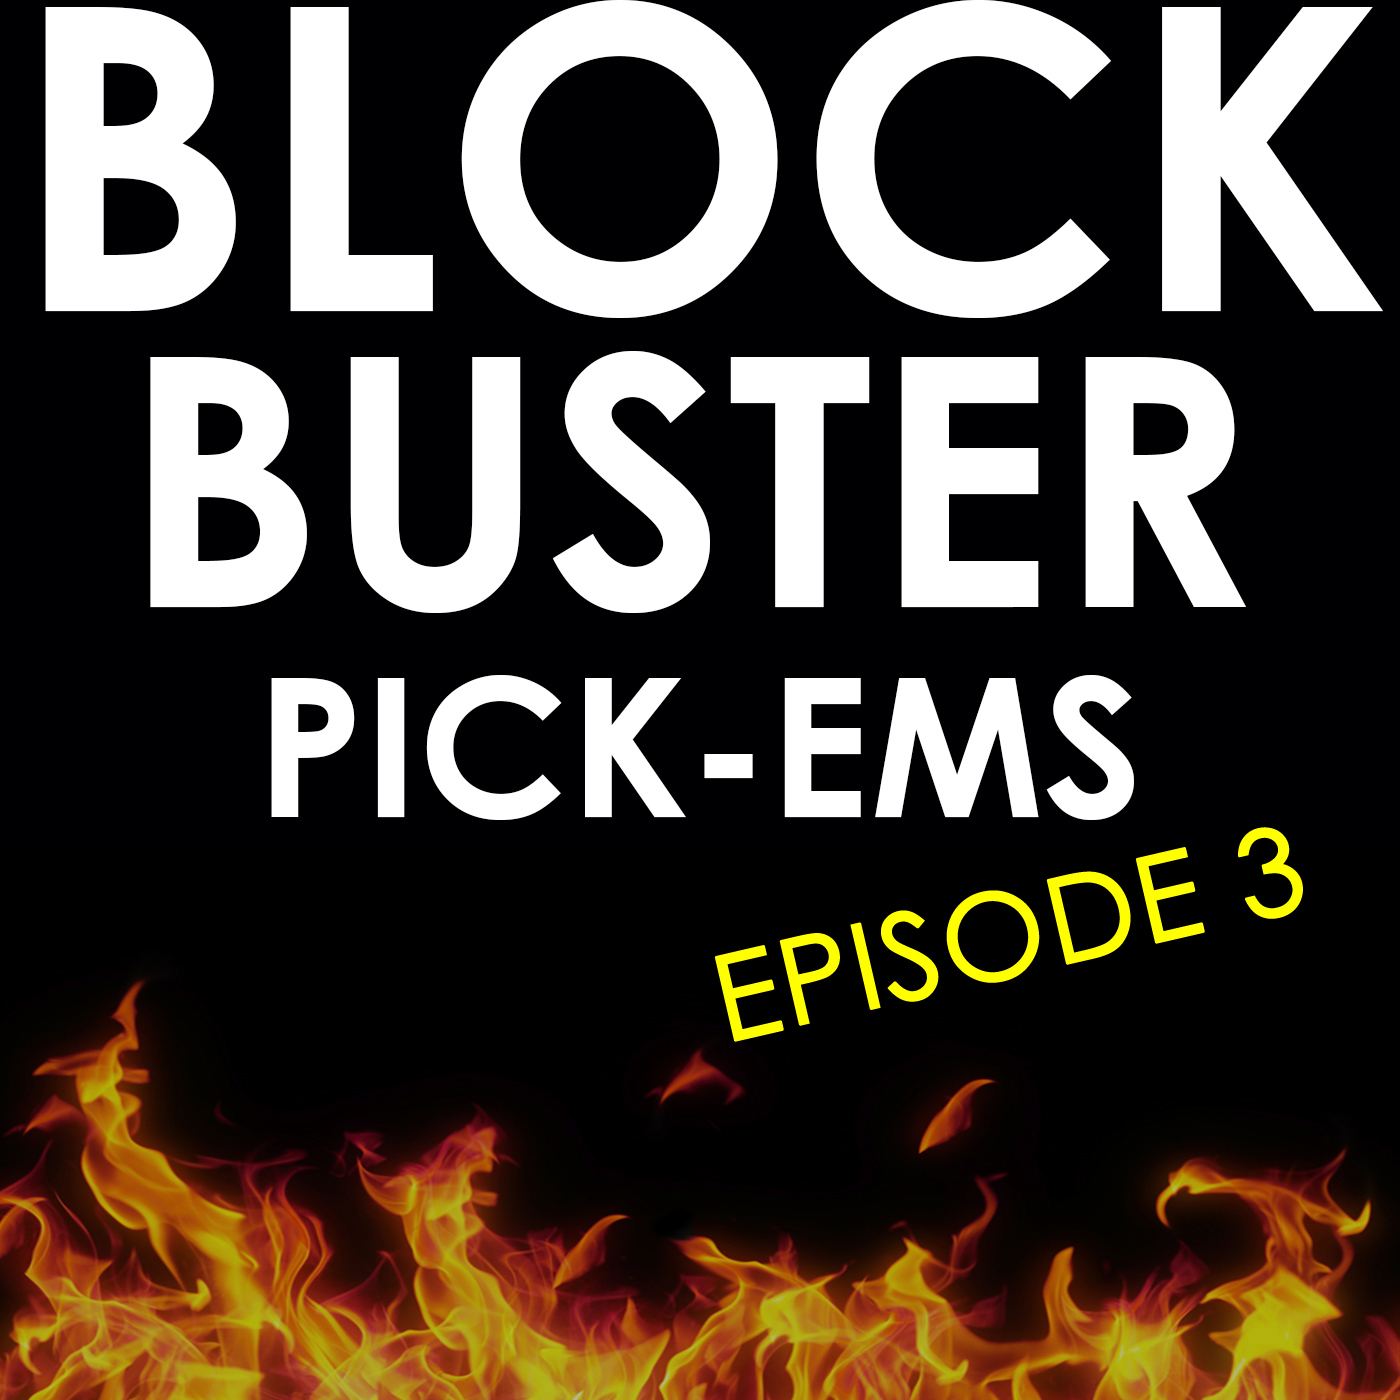 Blockbuster Pick-ems Episode 3